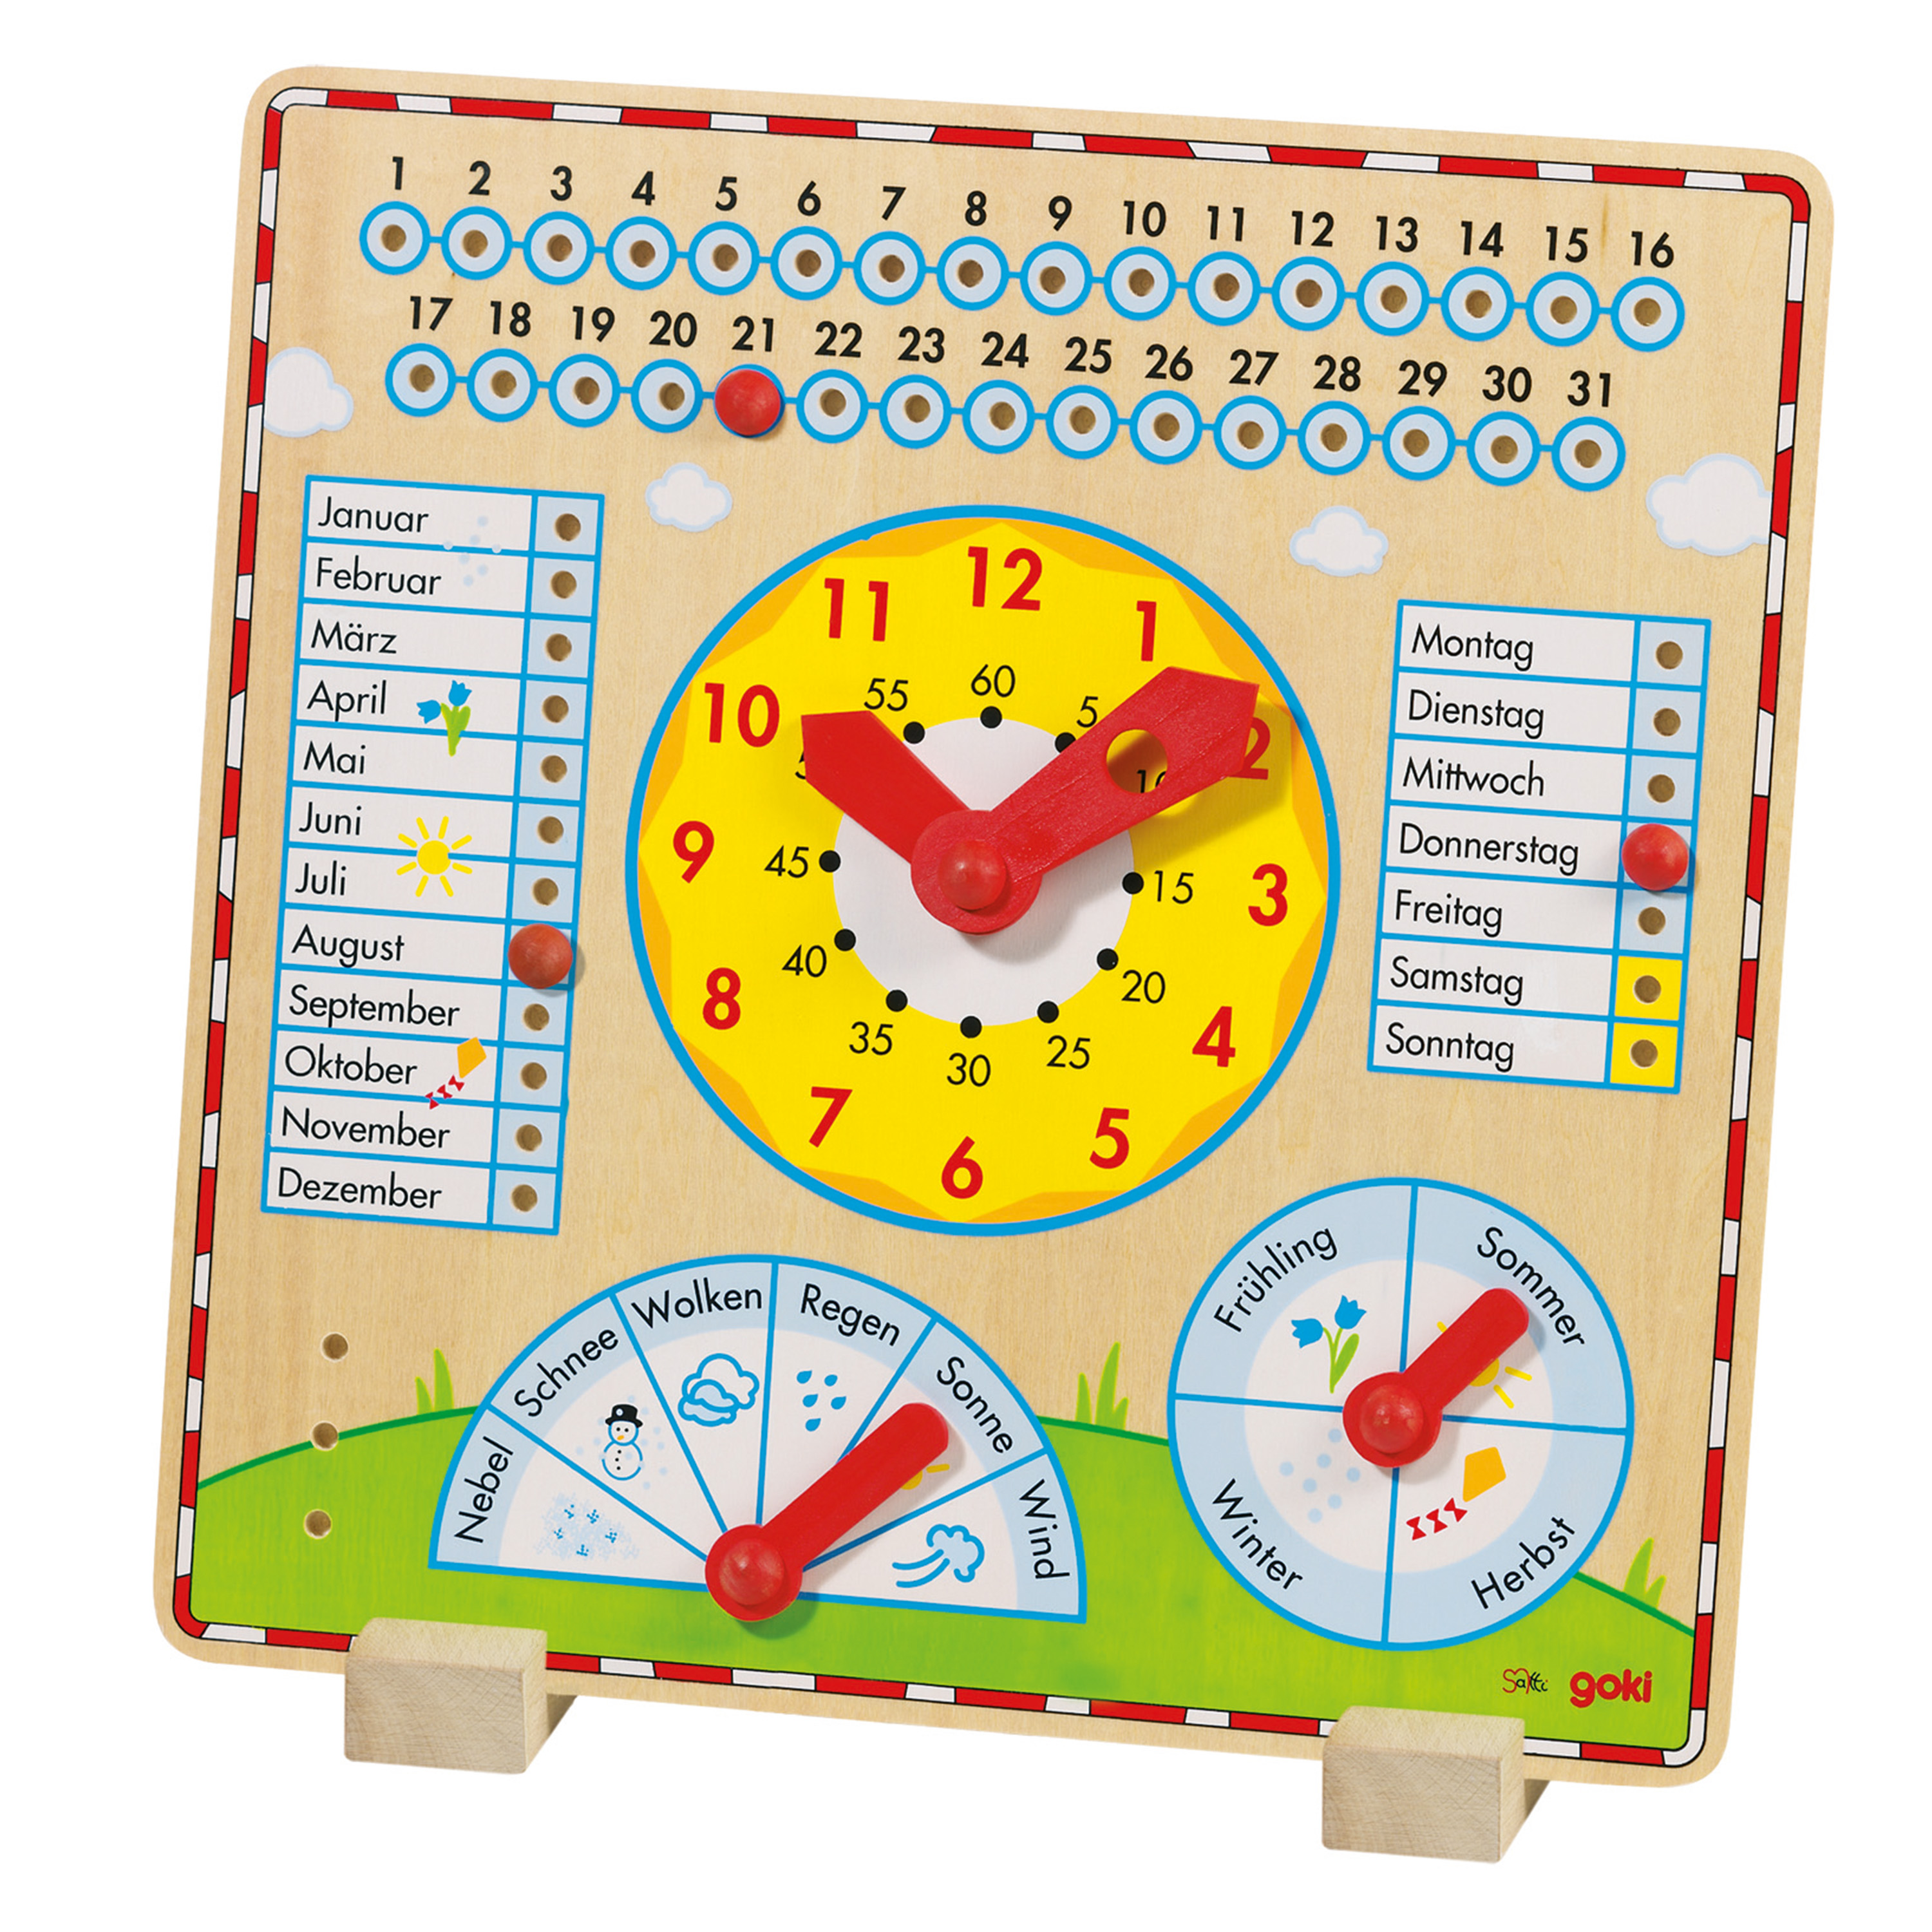 Kalenderuhr mit Datums- und Wetteranzeige